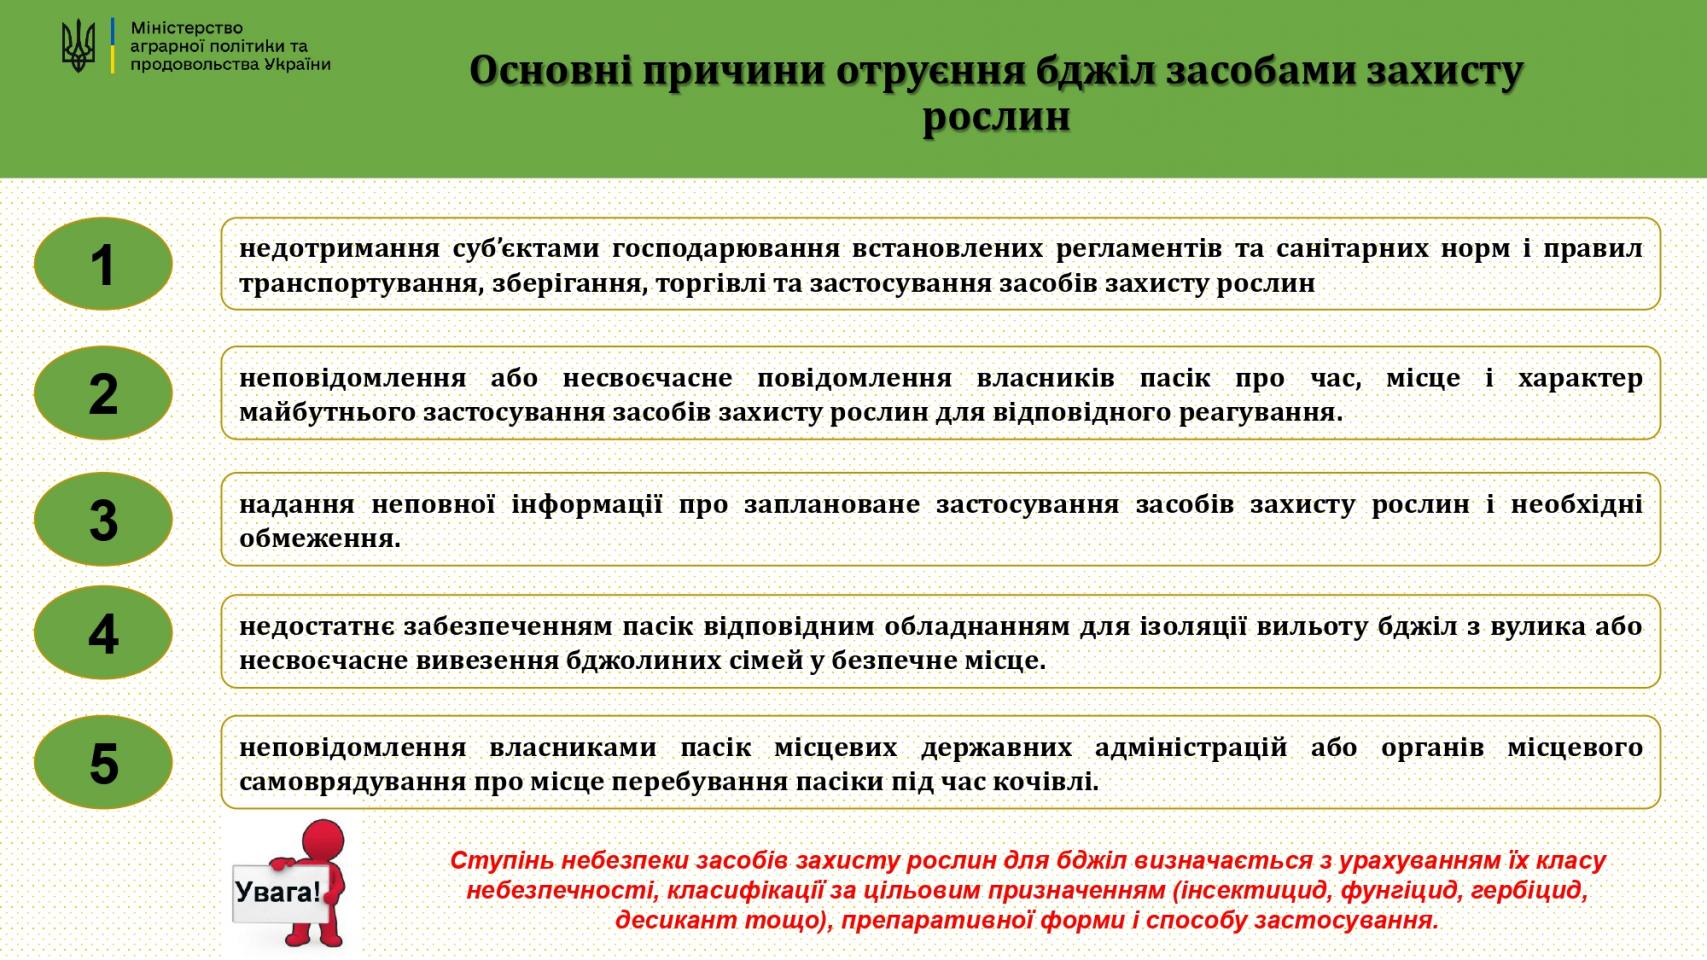 http://dunrada.gov.ua/uploadfile/archive_news/2023/03/27/2023-03-27_2315/images/images-51707.jpg